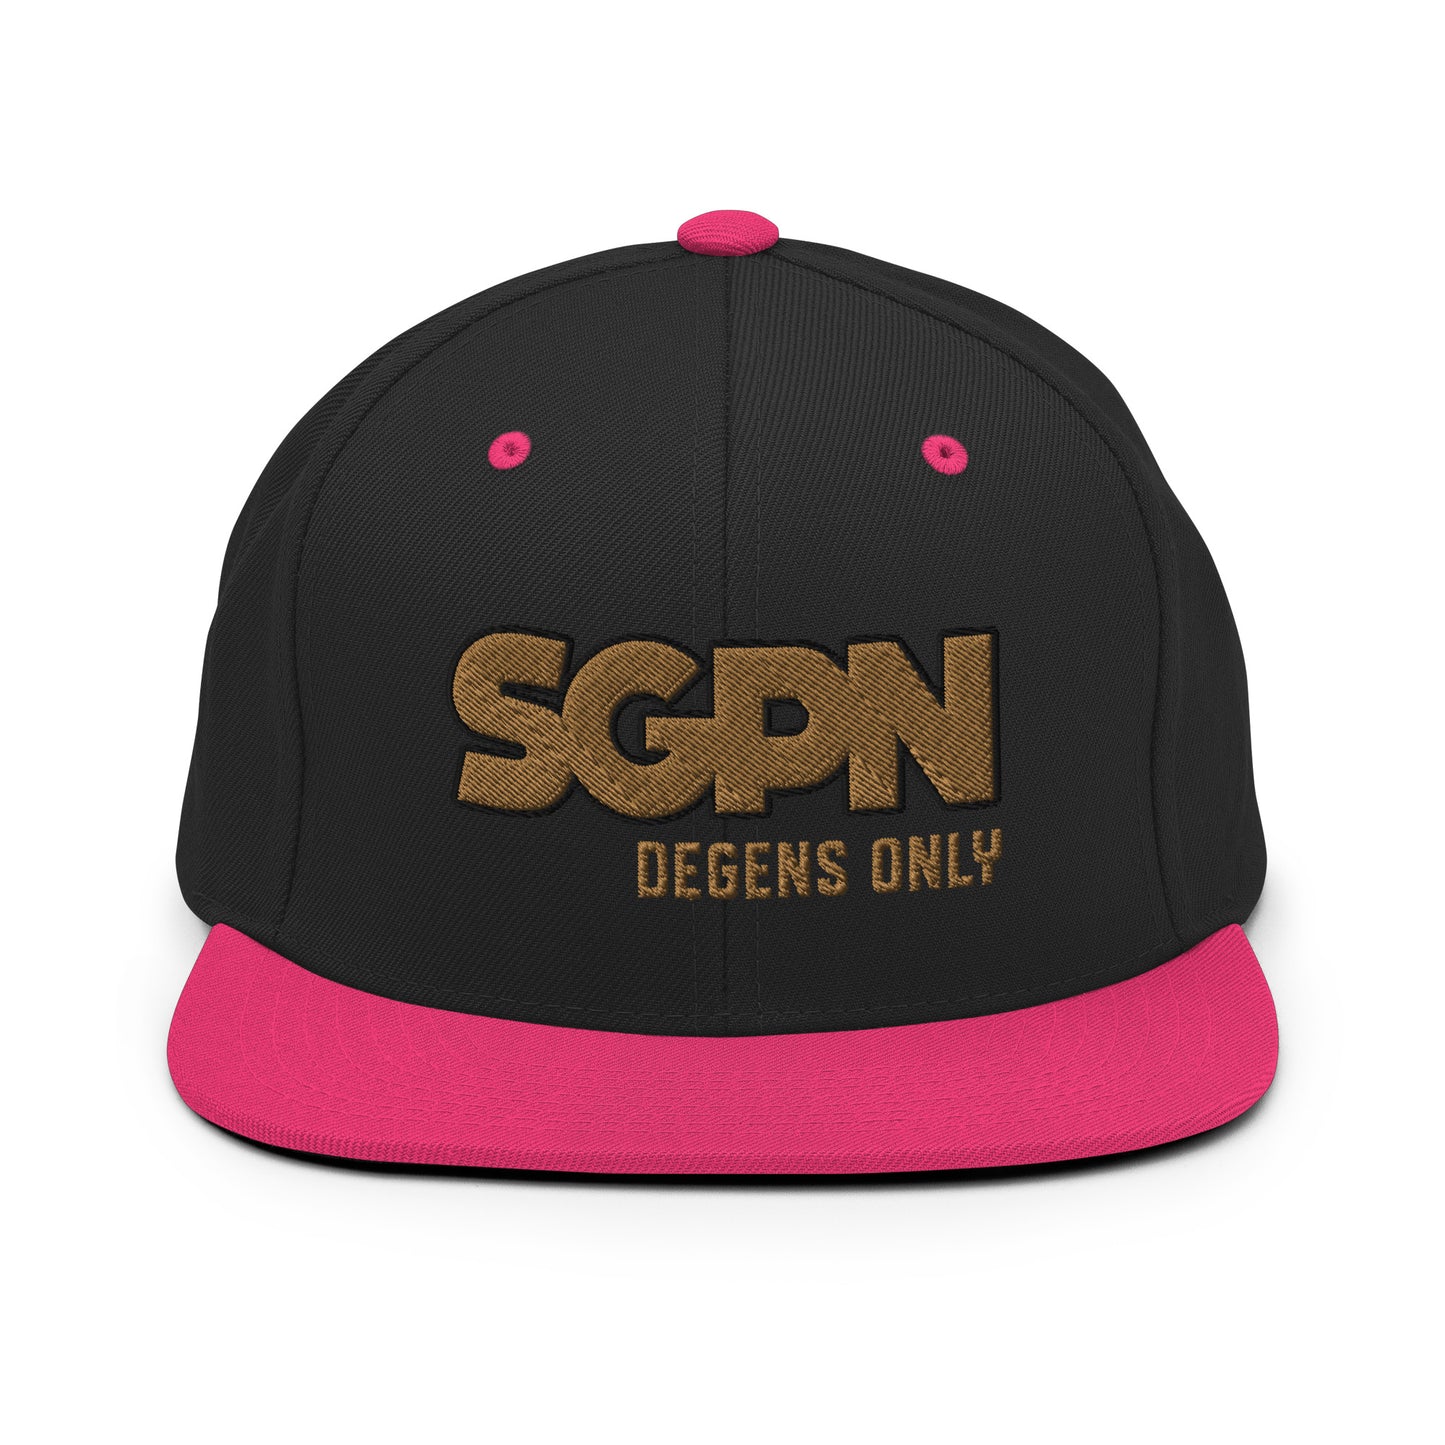 SGPN - Degens Only edition - Snapback Hat (2 thread color)